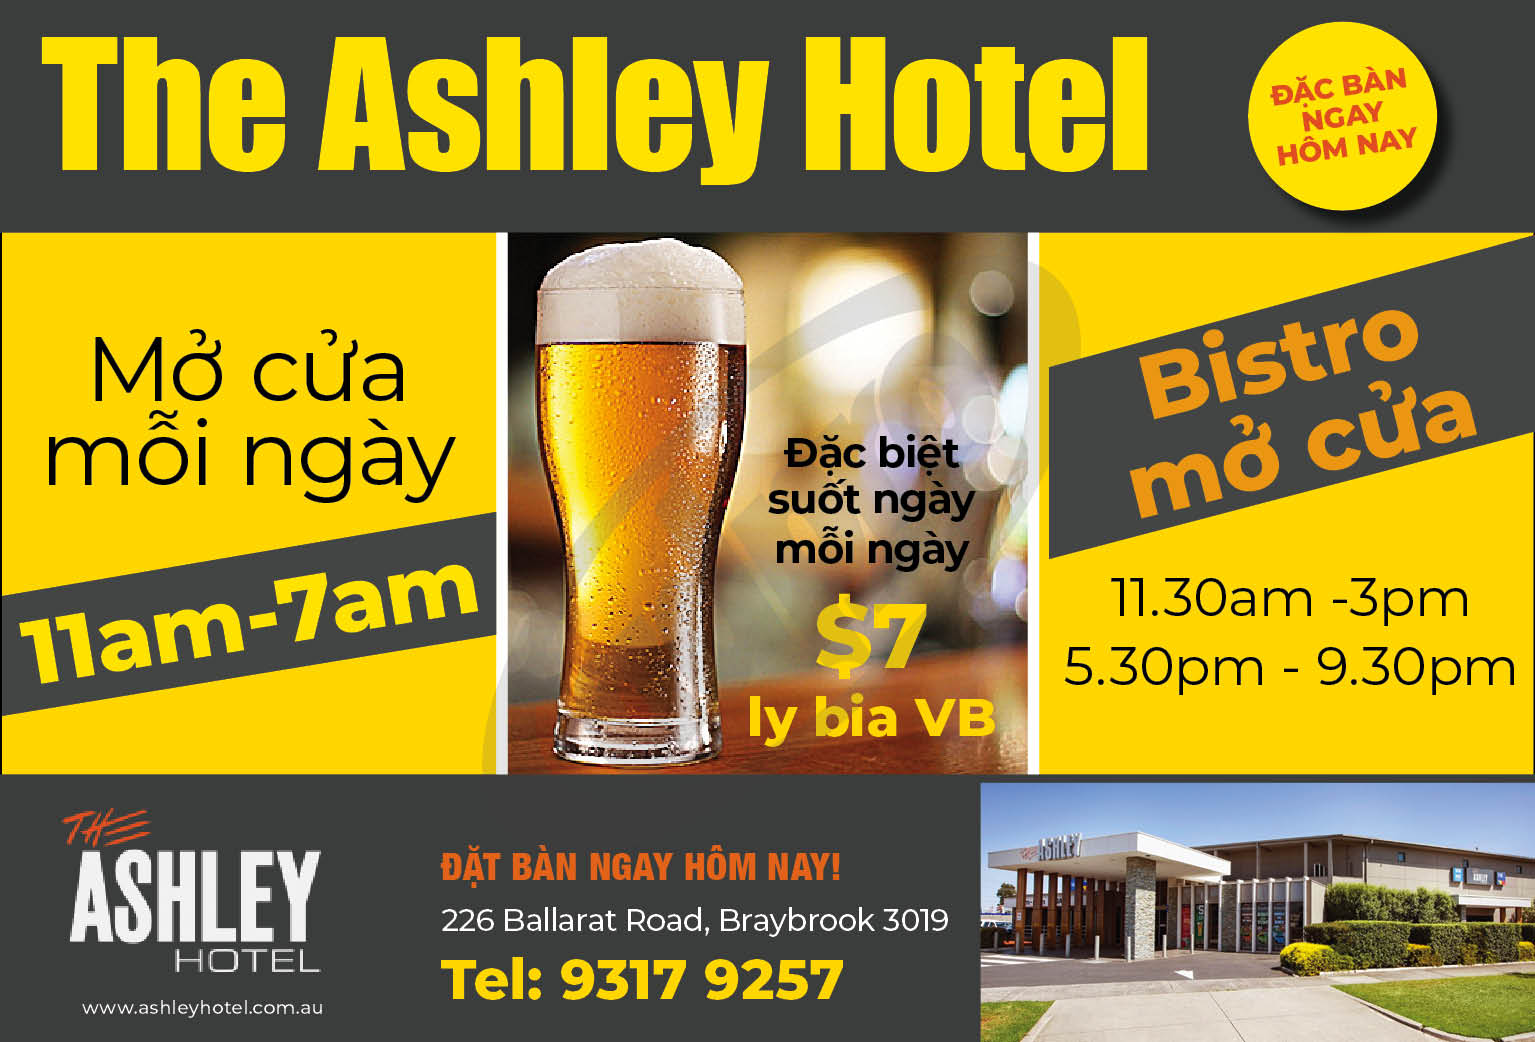 The Ashley Hotel